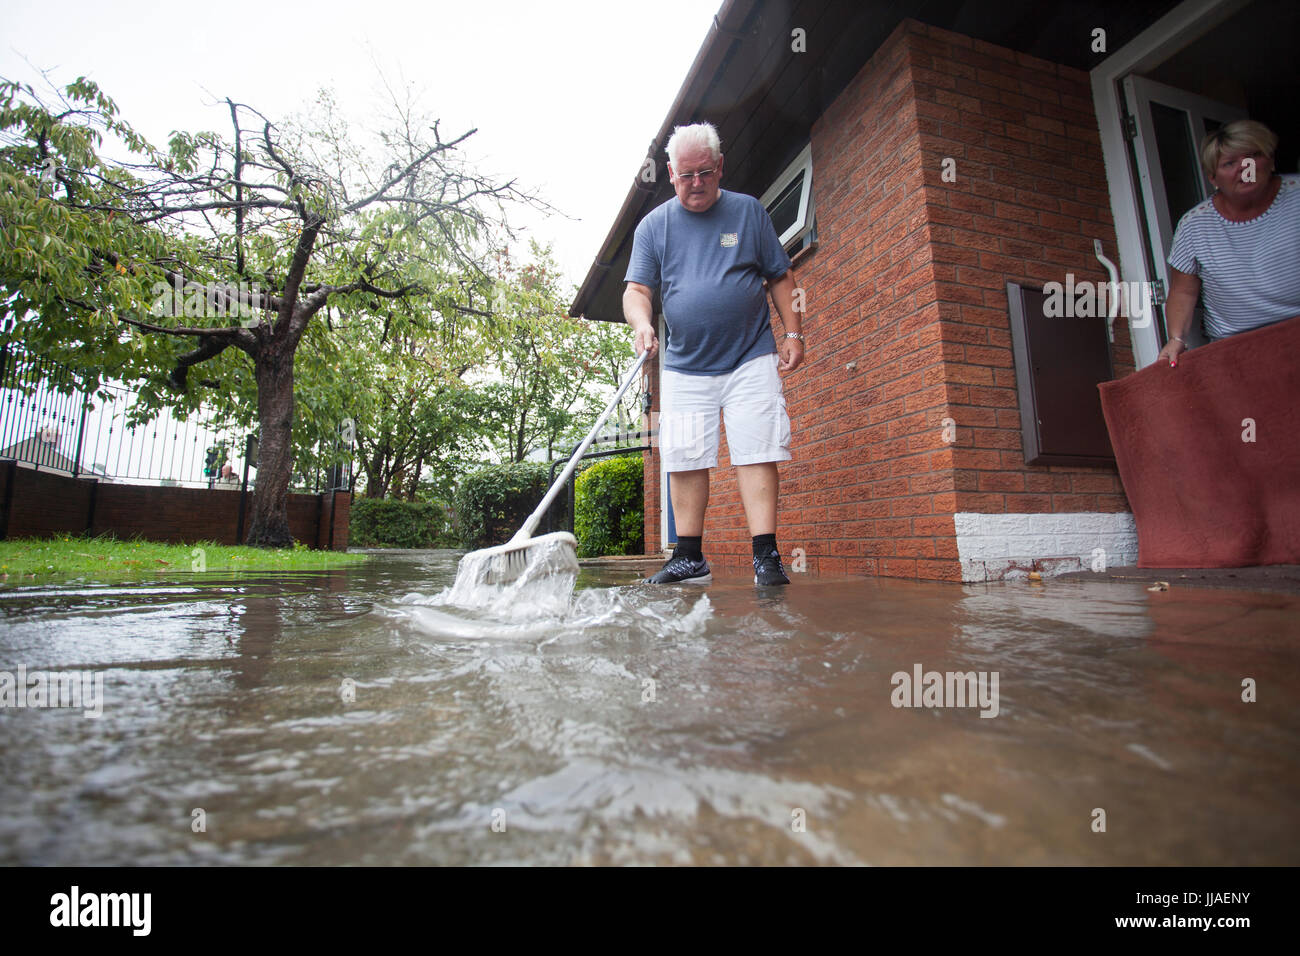 Ältere Person, die versucht, sein Haus durch Bürsten sie von der Haustür entfernt, nach Starkregen Flash-Überschwemmungen in Teilen von Nord-Wales einschließlich Rhyl links Sturzflut Wasser fernhalten Stockfoto